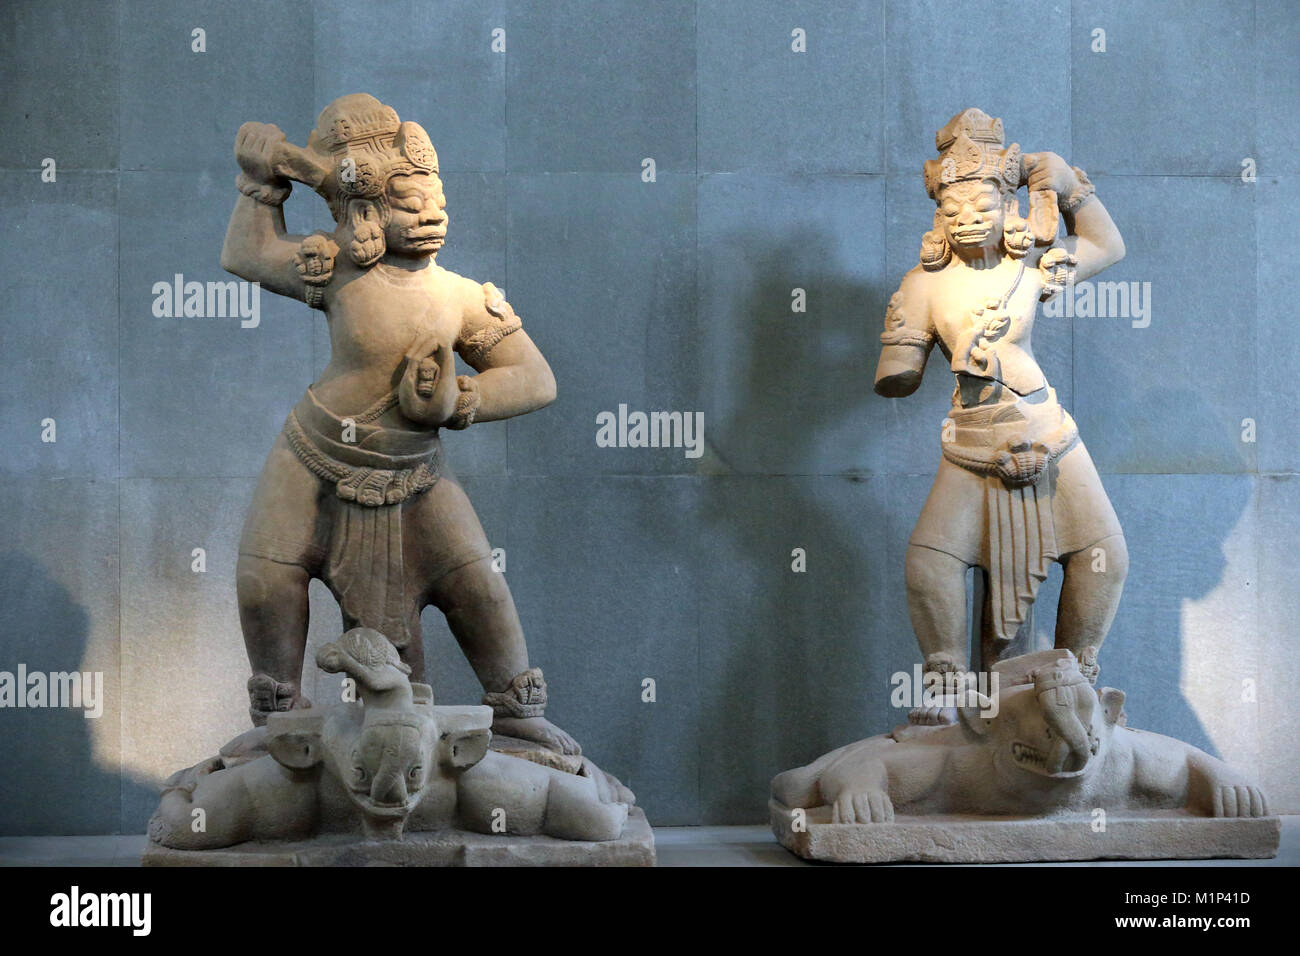 Halbgott bewachen das Tor, aus dem 10. Jahrhundert, das Museum der Cham-skulpturen, Danang, Vietnam, Indochina, Südostasien, Asien Stockfoto